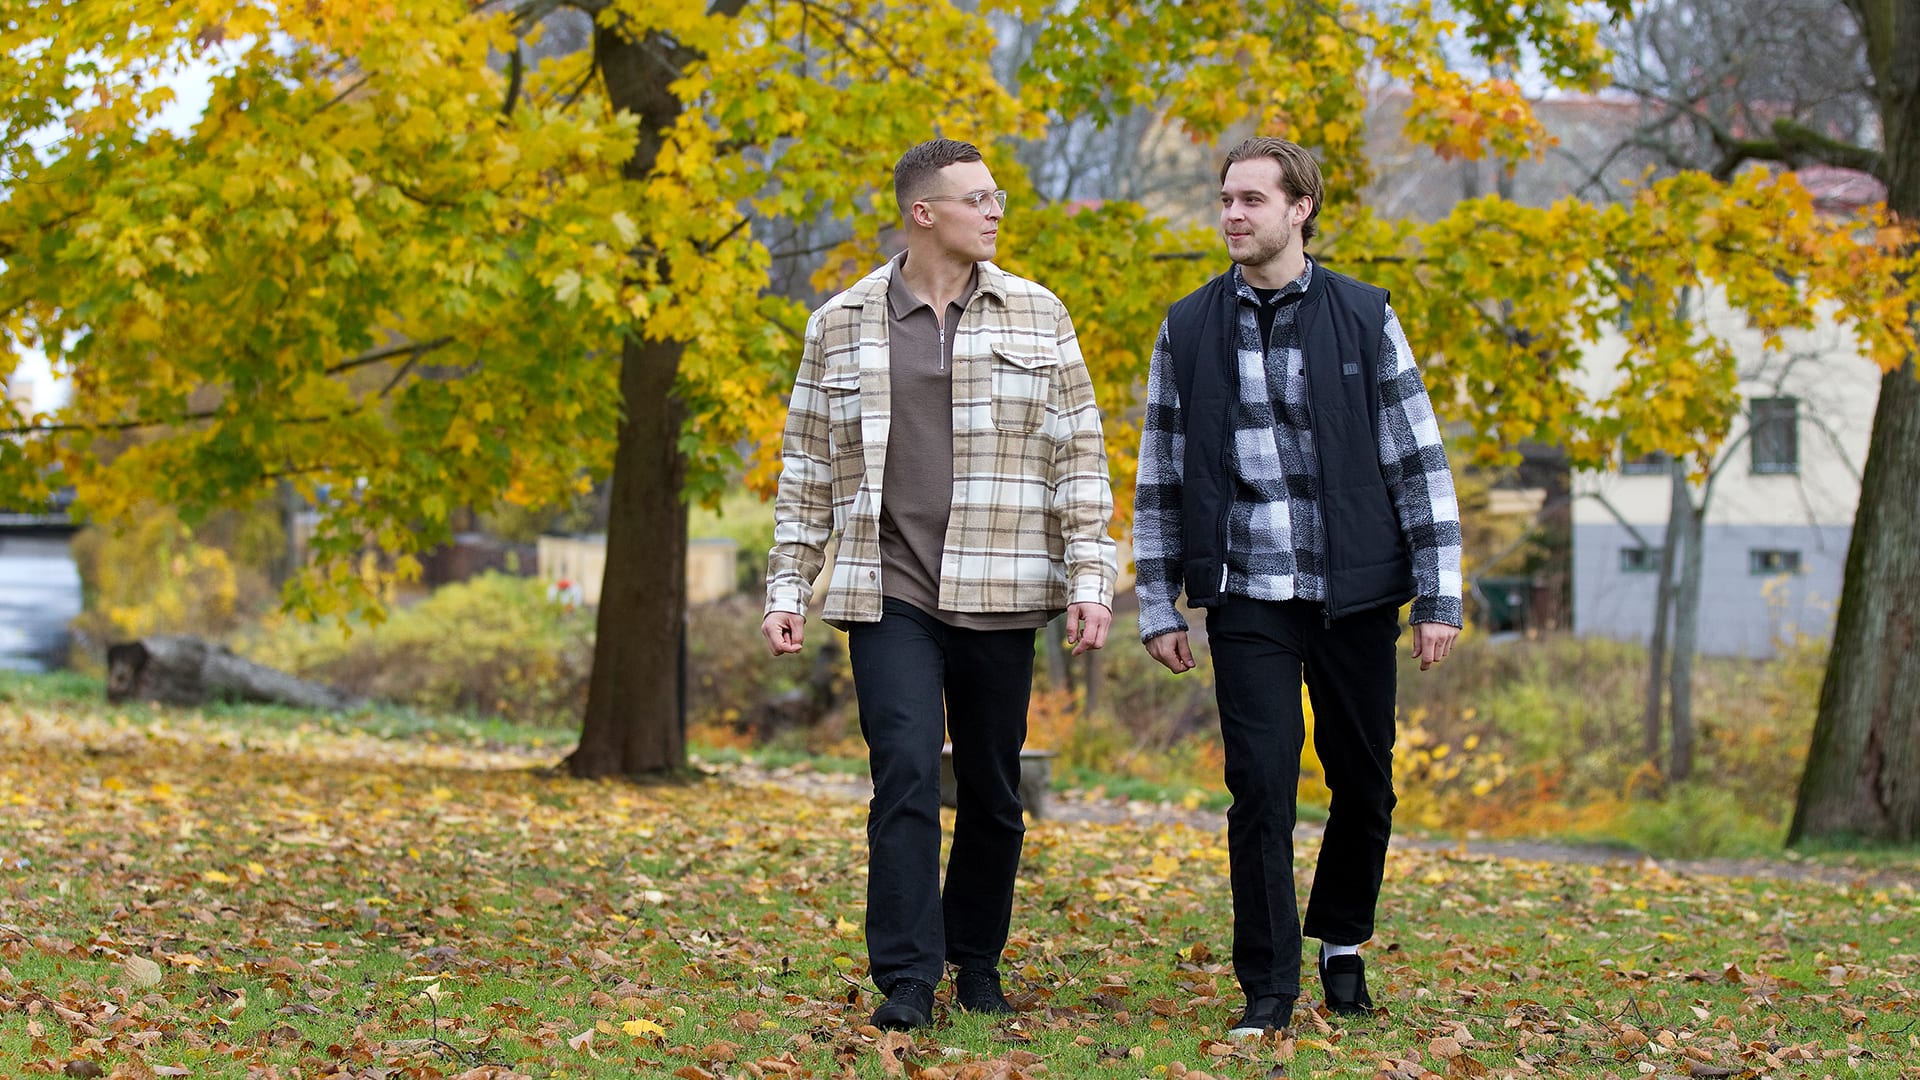 Bröderna Jacob och Adam promenerar i en park färgad gul och röd av höstens intåg.